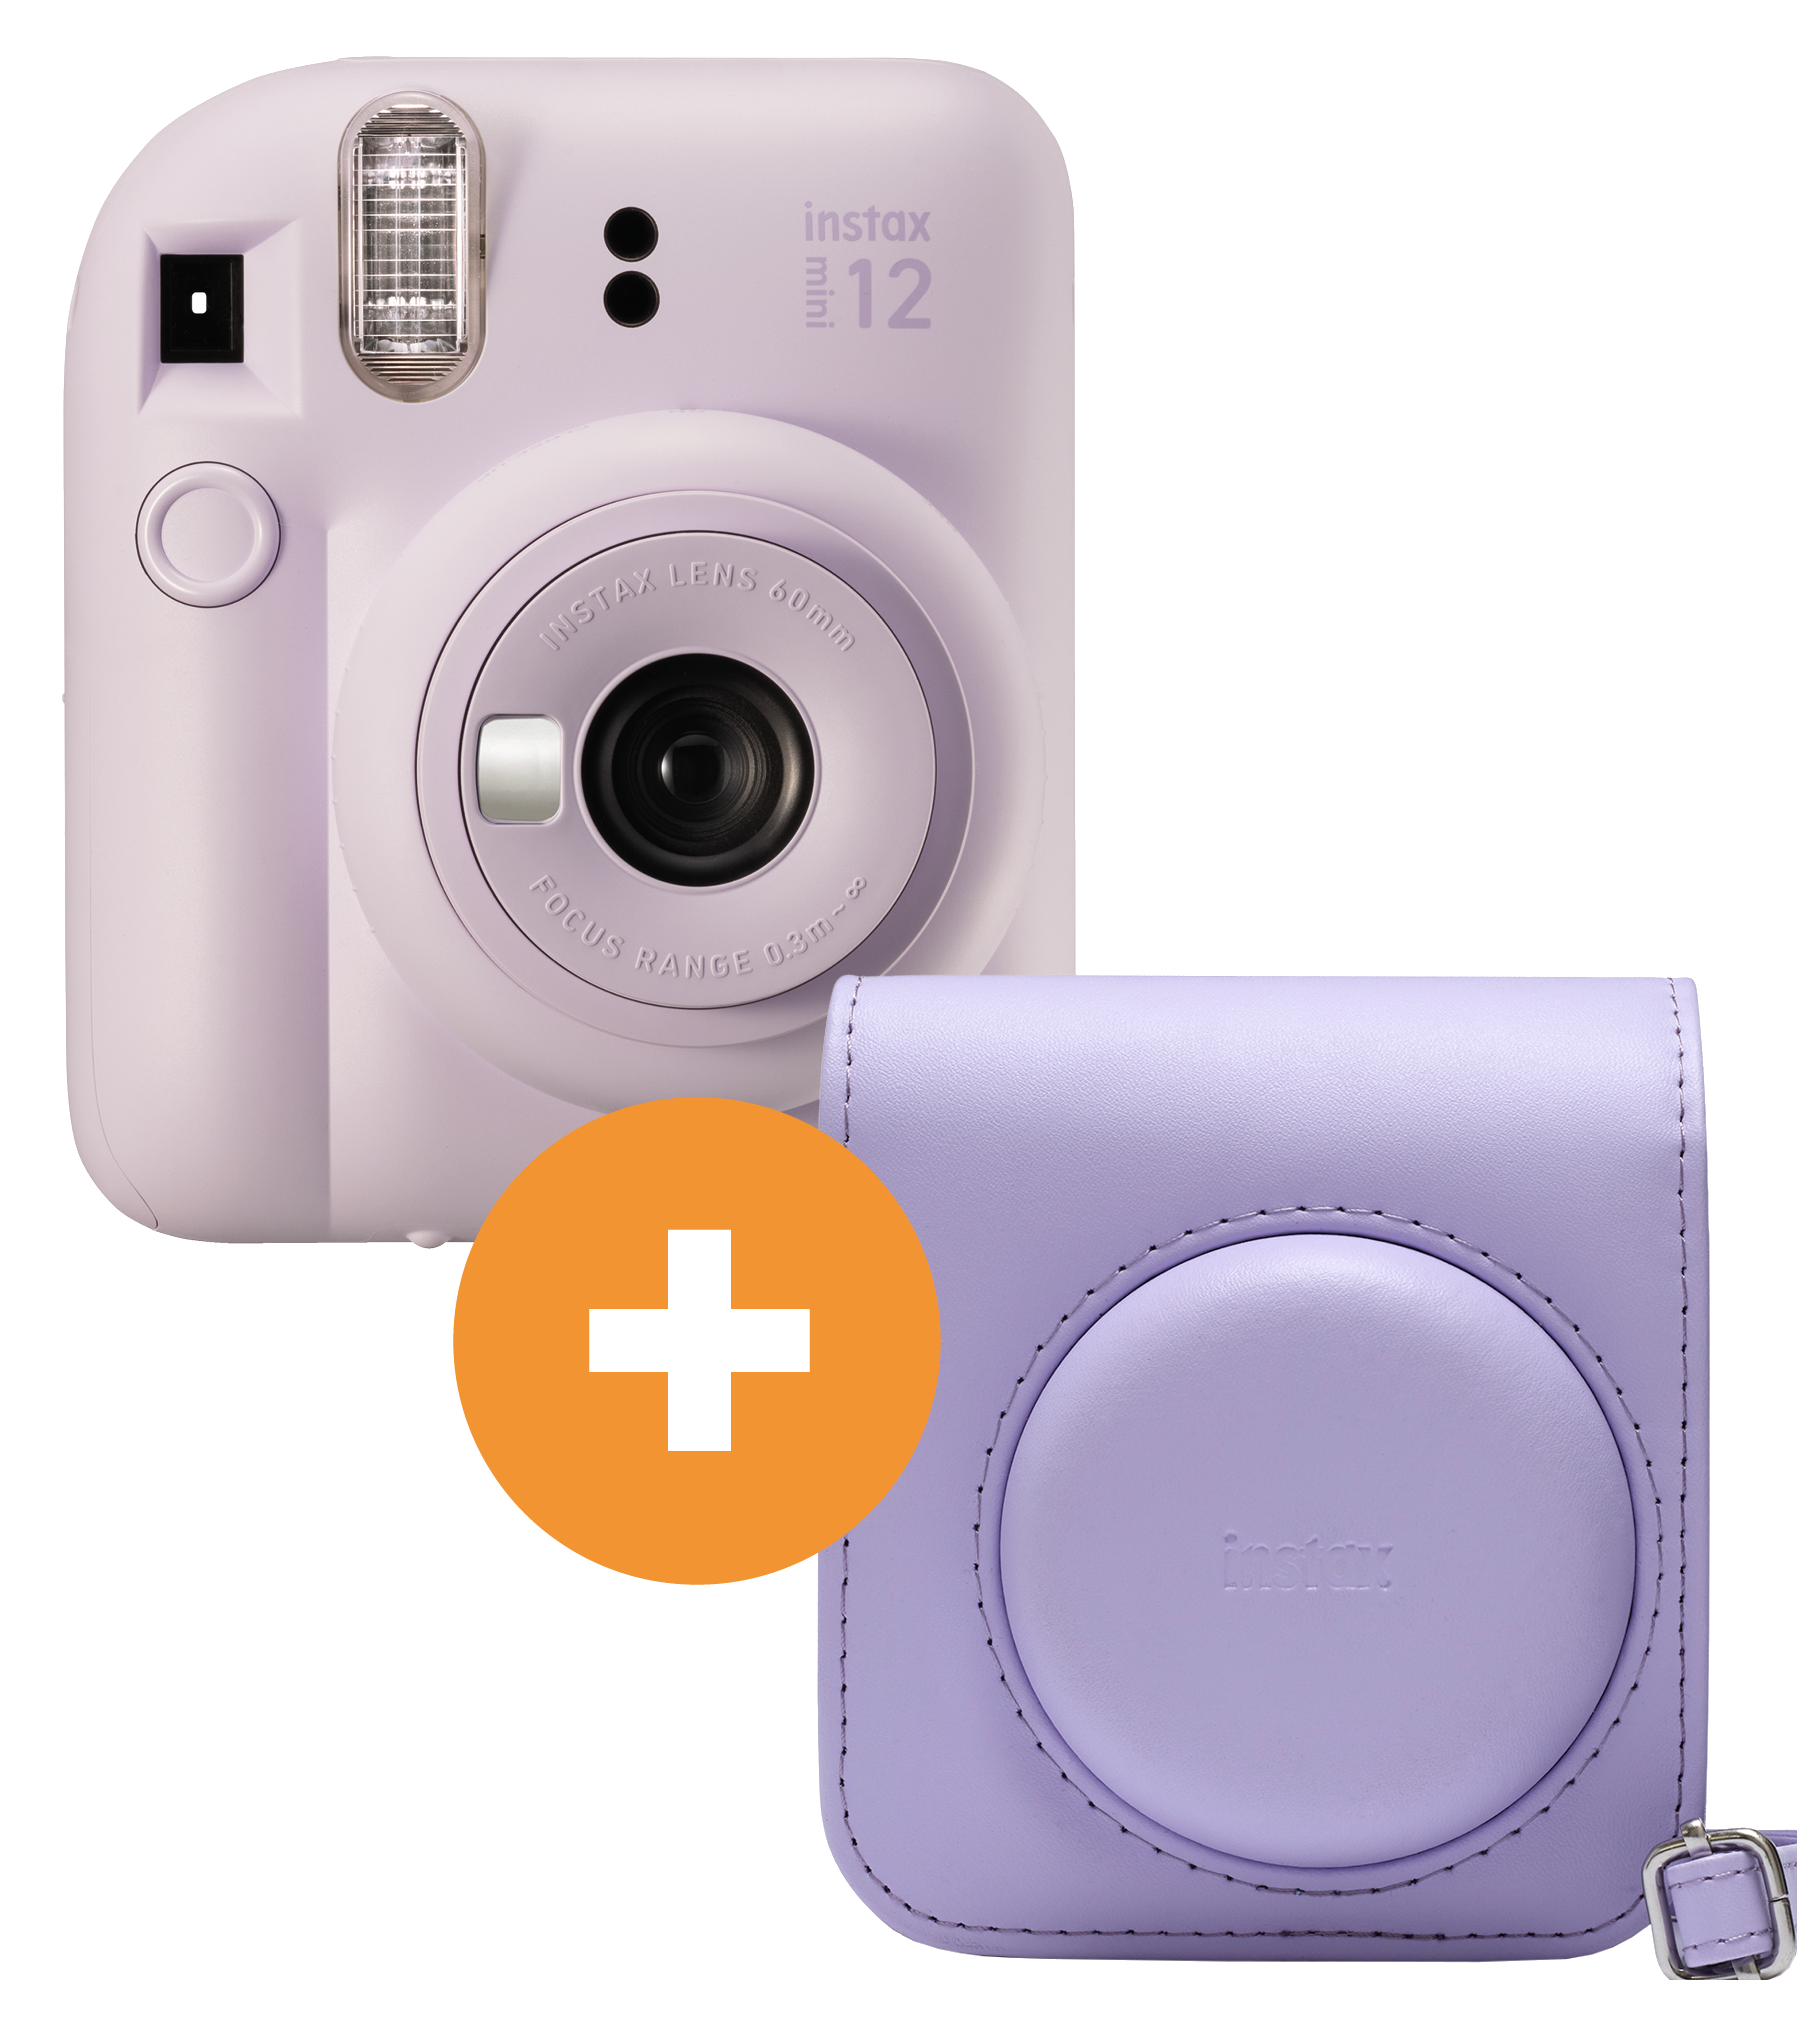 INSTAX Sofortbildkamera, Purple Set Travel Lilac 12 mini FUJIFILM